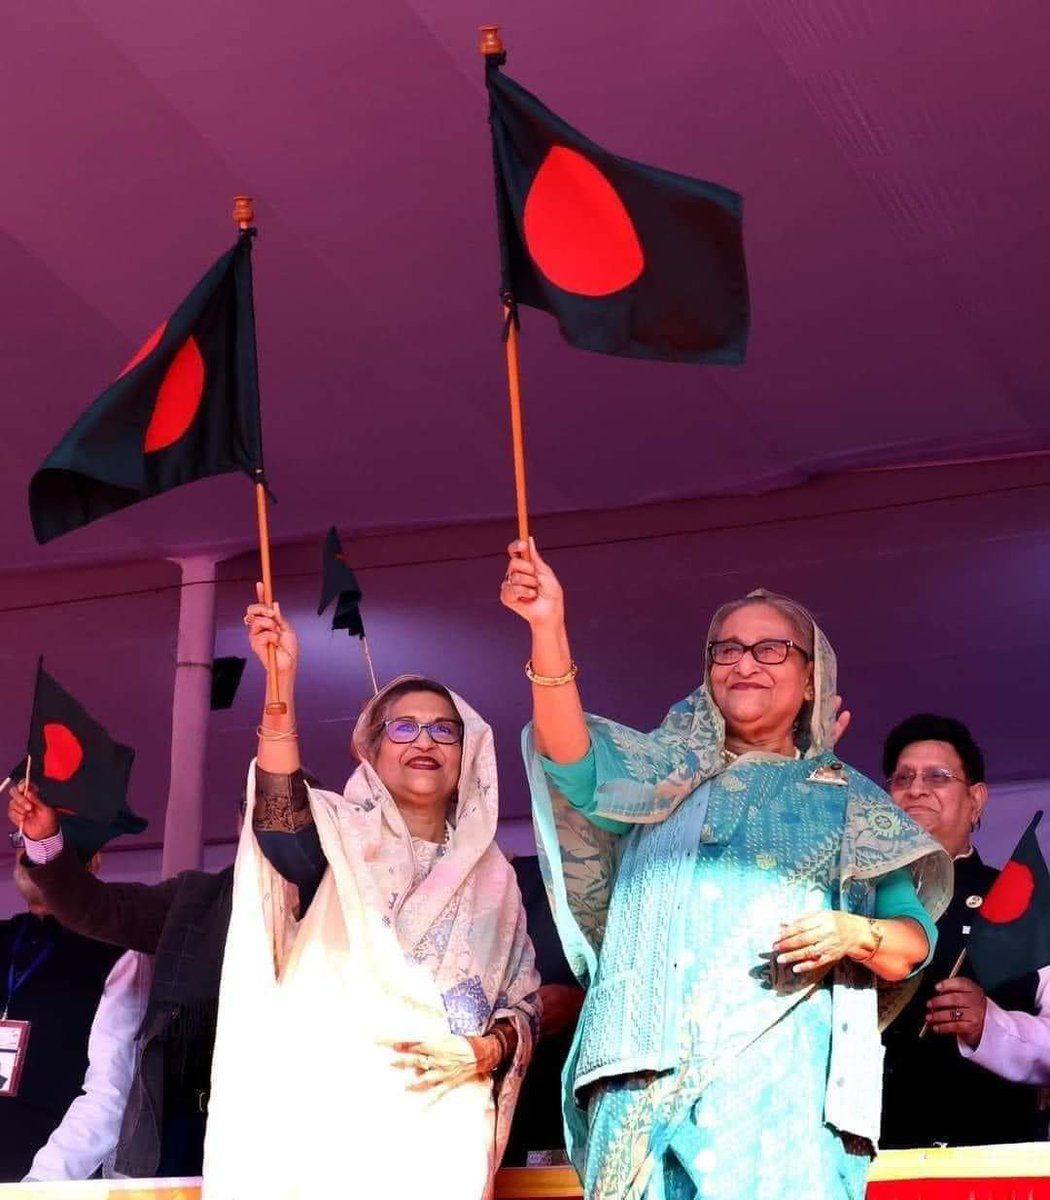 তারুণ্যের প্রত্যয়দীপ্ত শপথ:
#OnceAgainSheikhHasina

#goaheadshekhasina
#শেখ_হাসিনাতেই_আস্থা
#BangladeshStudentsLeague
#বদলে_যাওয়া_বাংলাদেশ
#নৌকার_জন্য_৩০_মিনিট_ক্যাম্পেইন 
#SmartBangladesh
#voteforbote